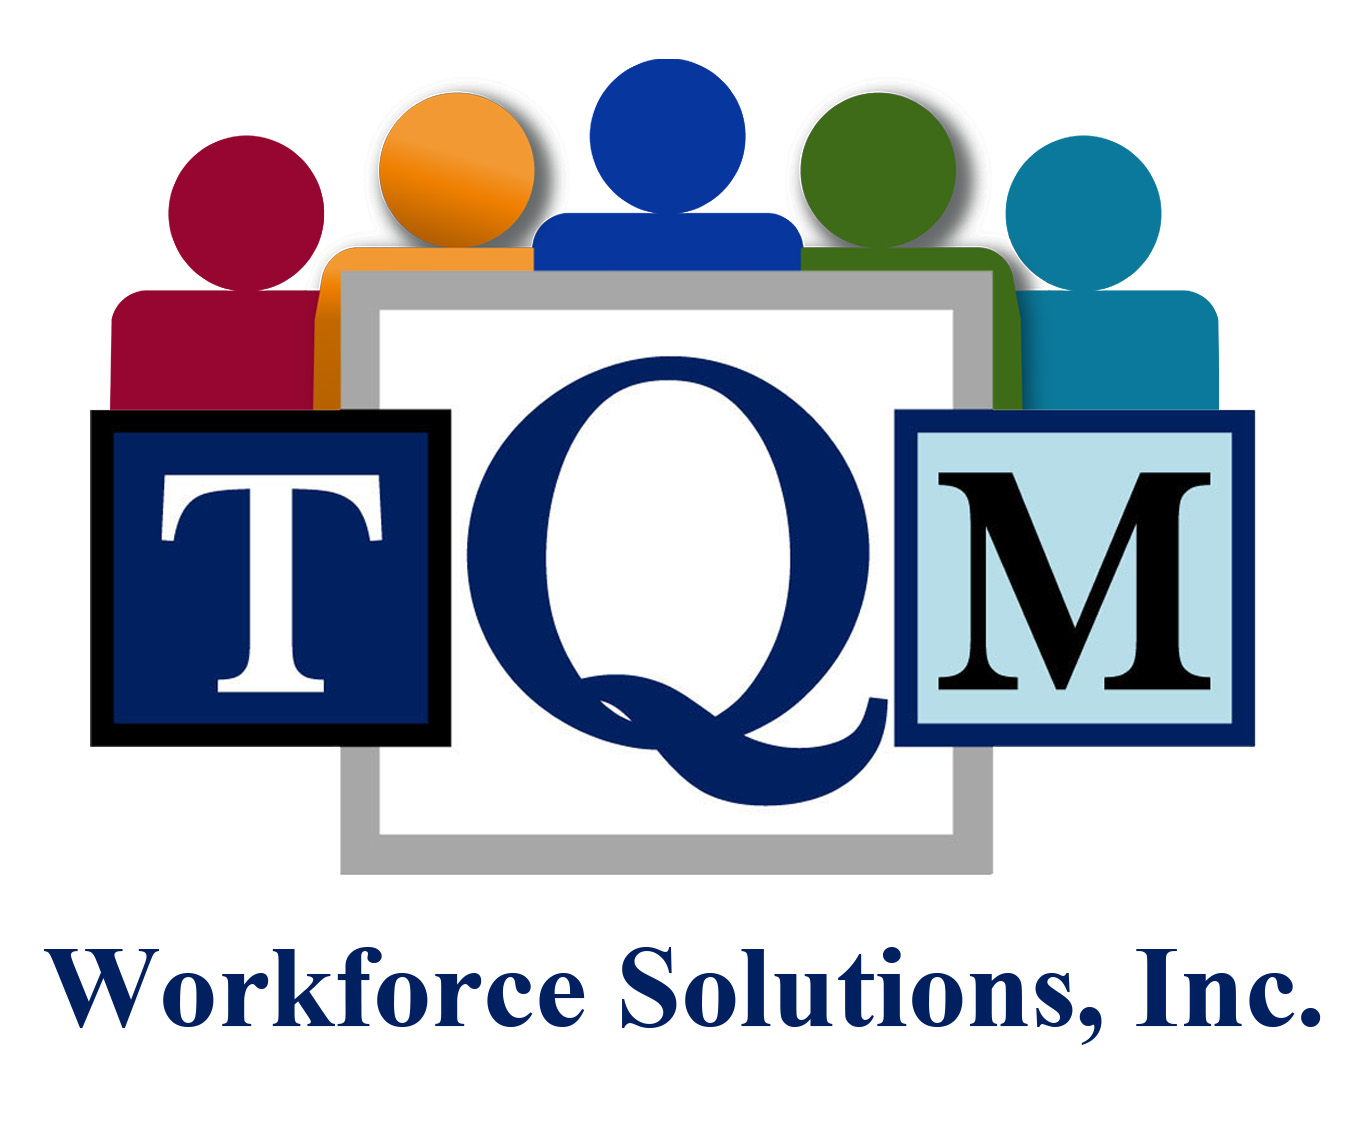 Total quality. TQM всеобщее управление качеством. Концепция всеобщего управления качеством. Всеобщий менеджмент качества TQM. Концепция total quality Management.